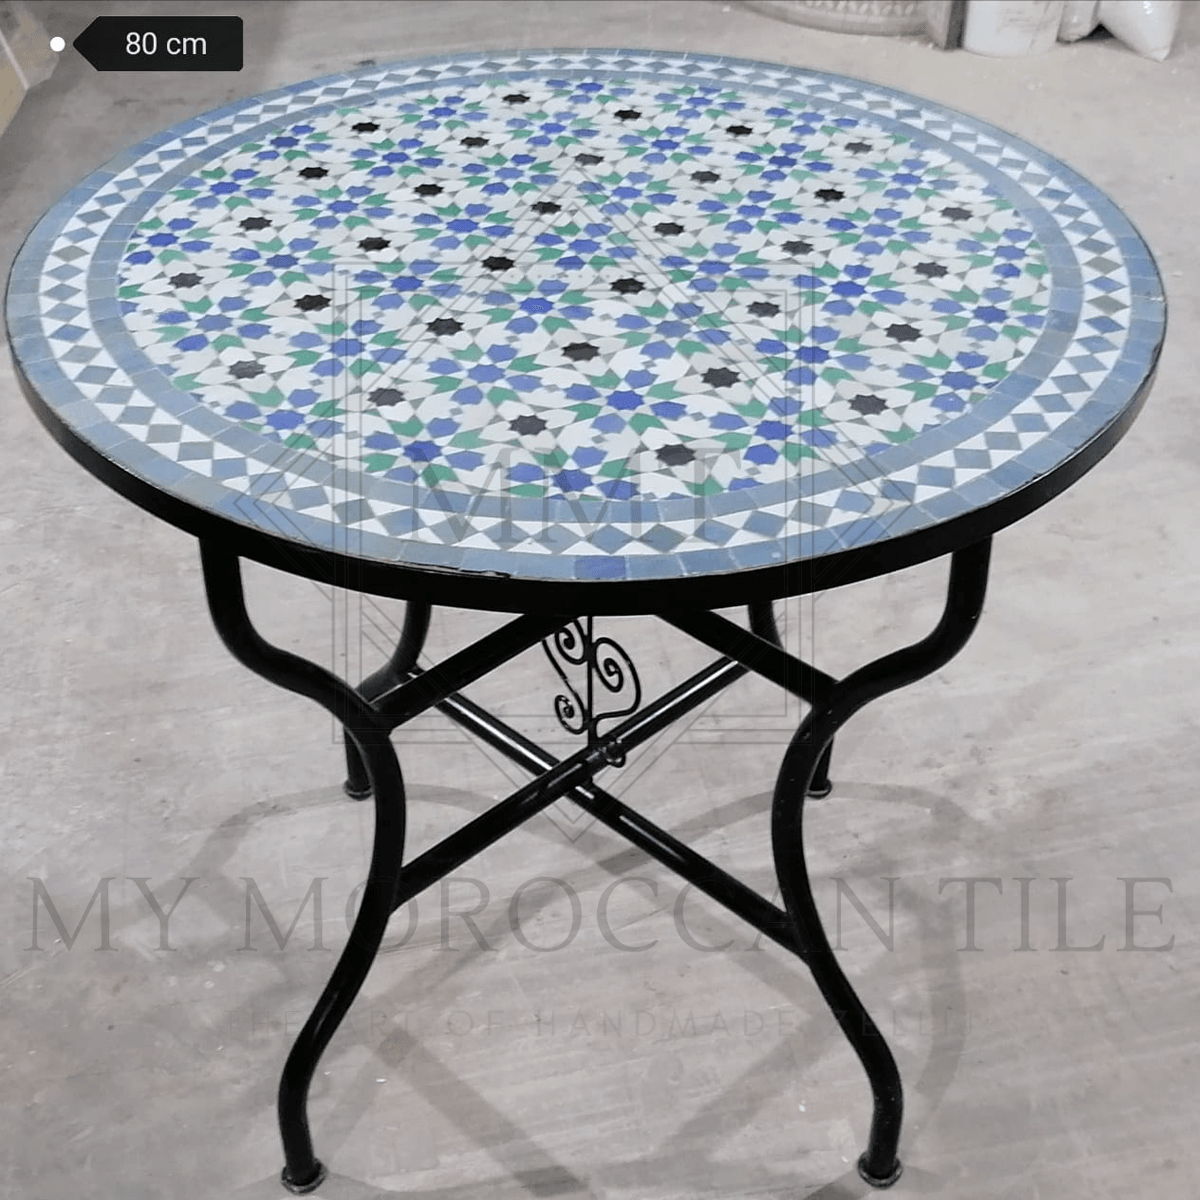 Mesa de mosaico marroquí hecha a mano 2108-15